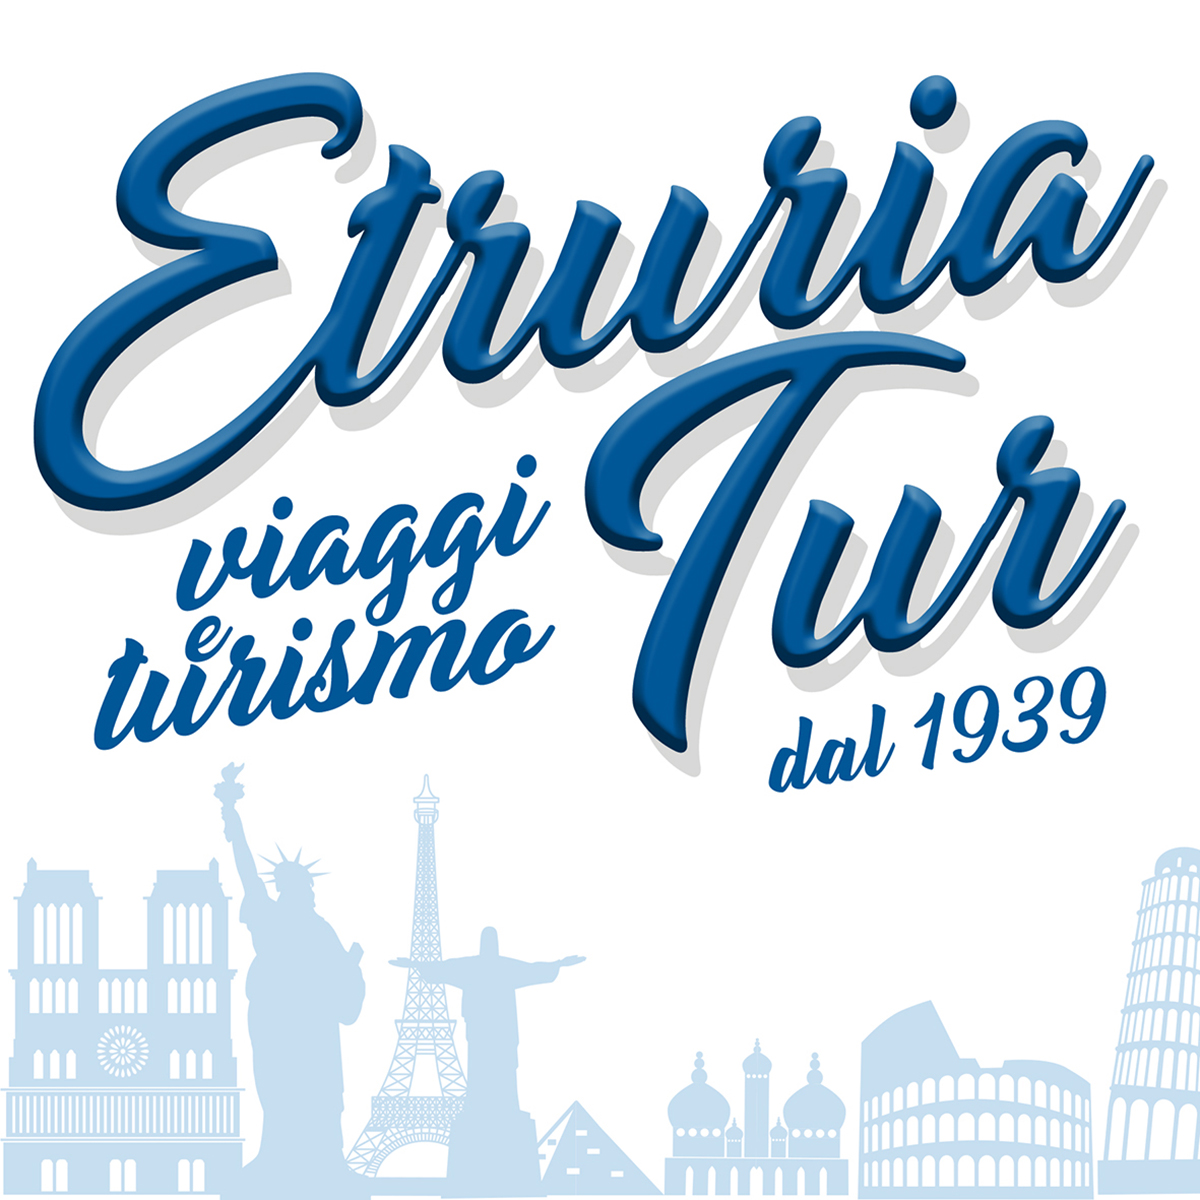 Etruria Tour